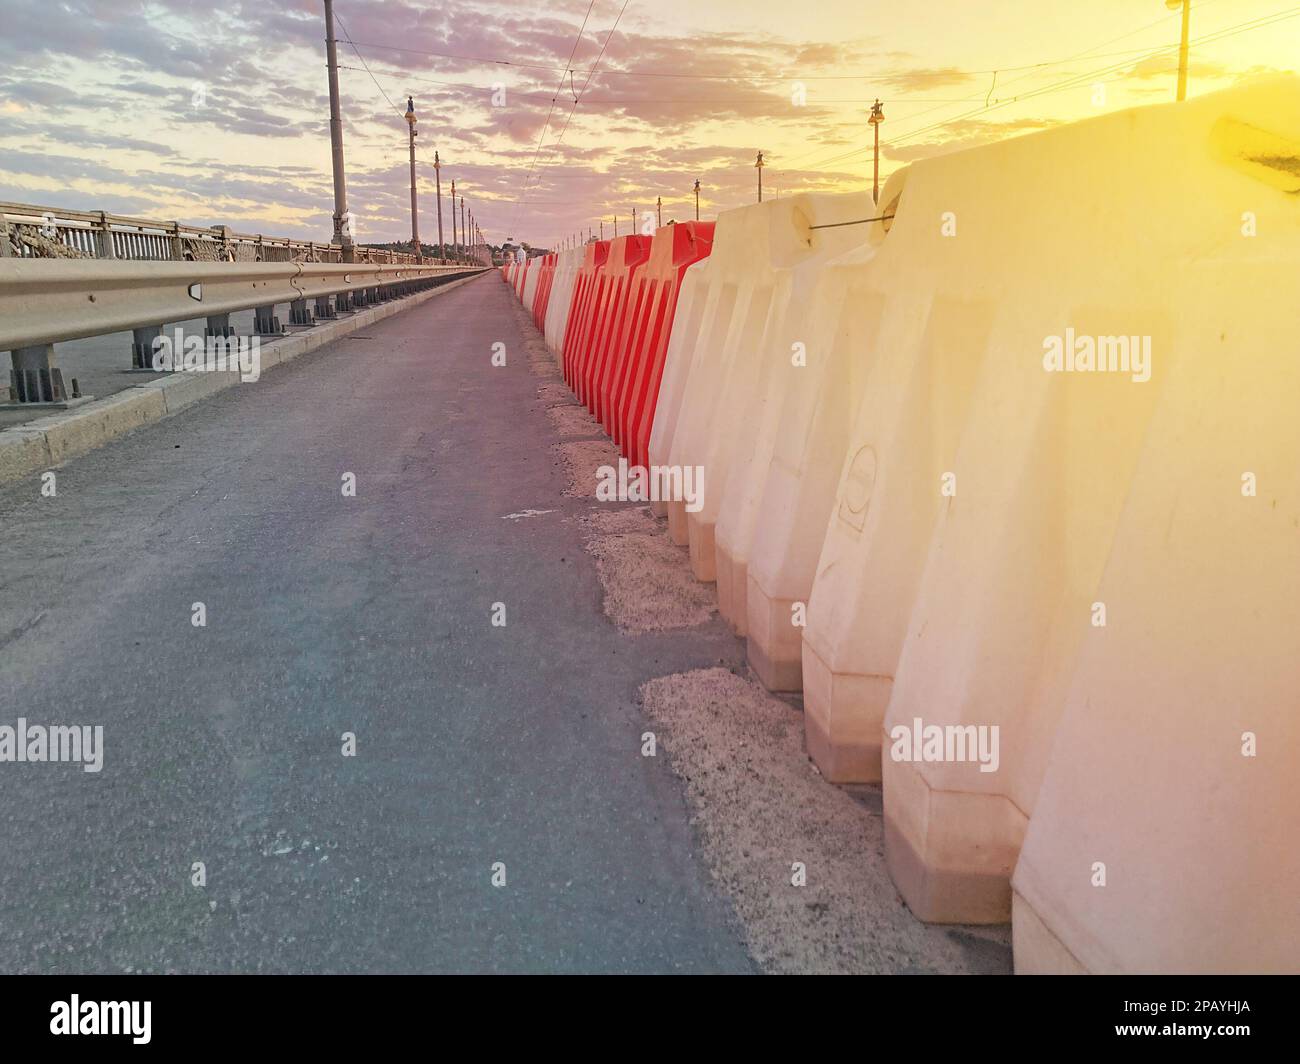 Barrières routières en plastique remplies d'eau rouge et blanche. clôtures en plastique rouge et blanc sur la route de l'autoroute, sur le périphérique de la ville moderne. r Banque D'Images